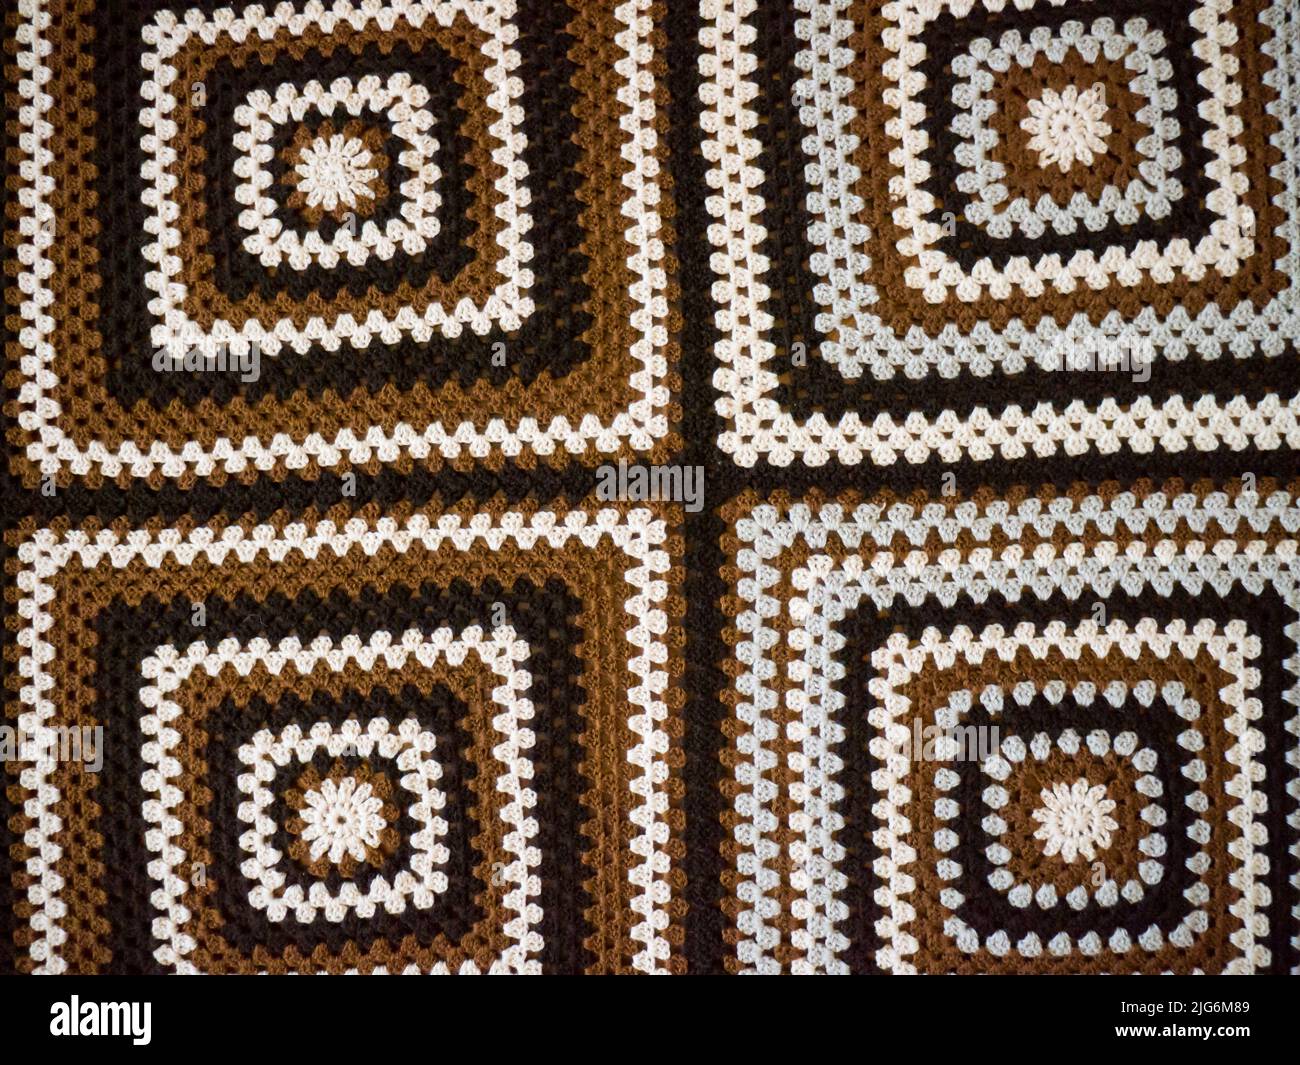 Knitted handmade blanket. Stock Photo